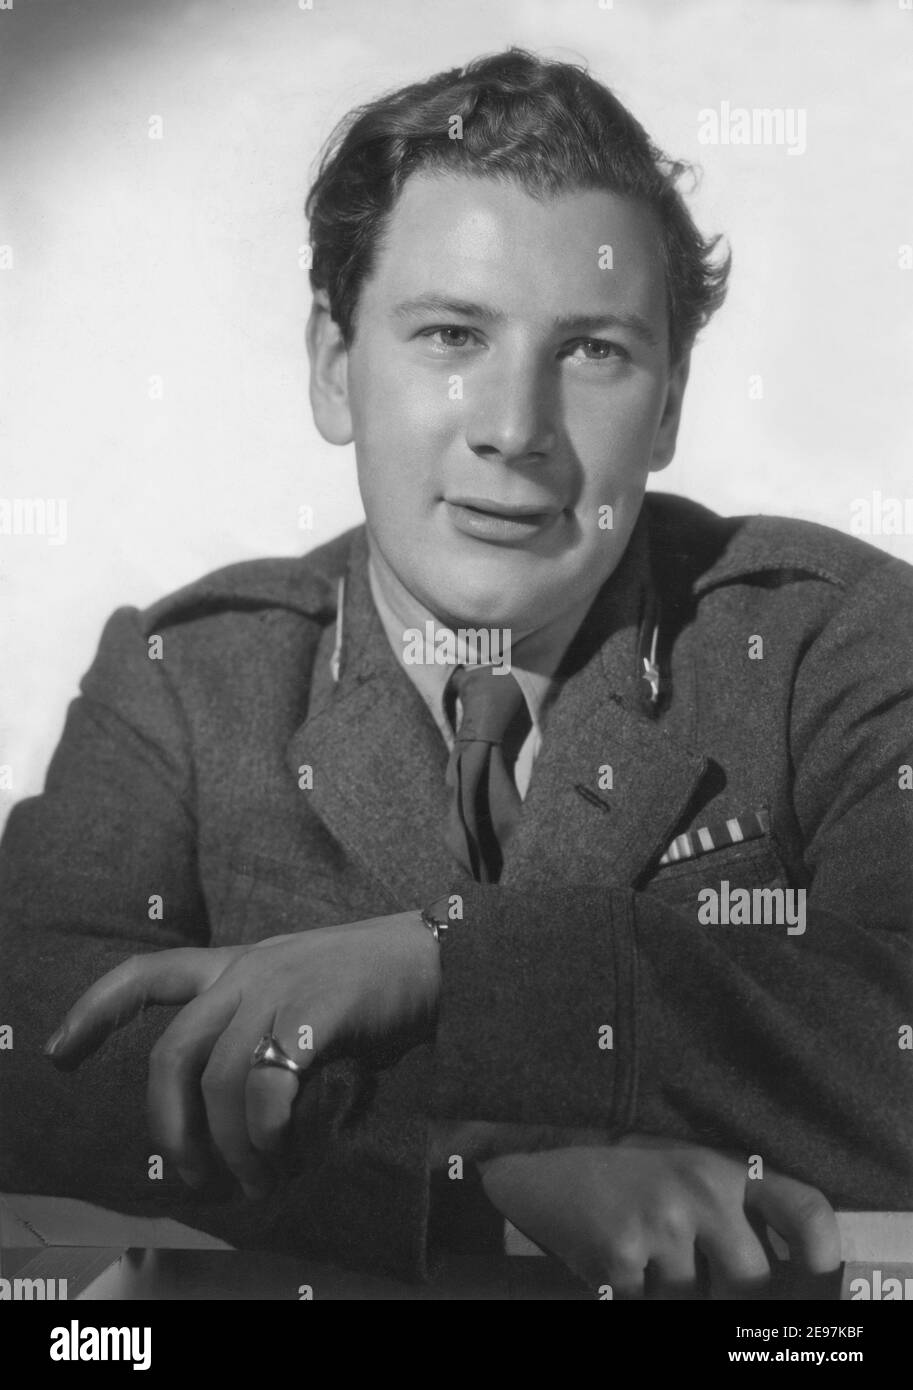 Peter Ustinov. Englischer Schauspieler geboren am 16 1921. april, gestorben am 28 2004. märz. Foto Mitte 1940s. Stockfoto